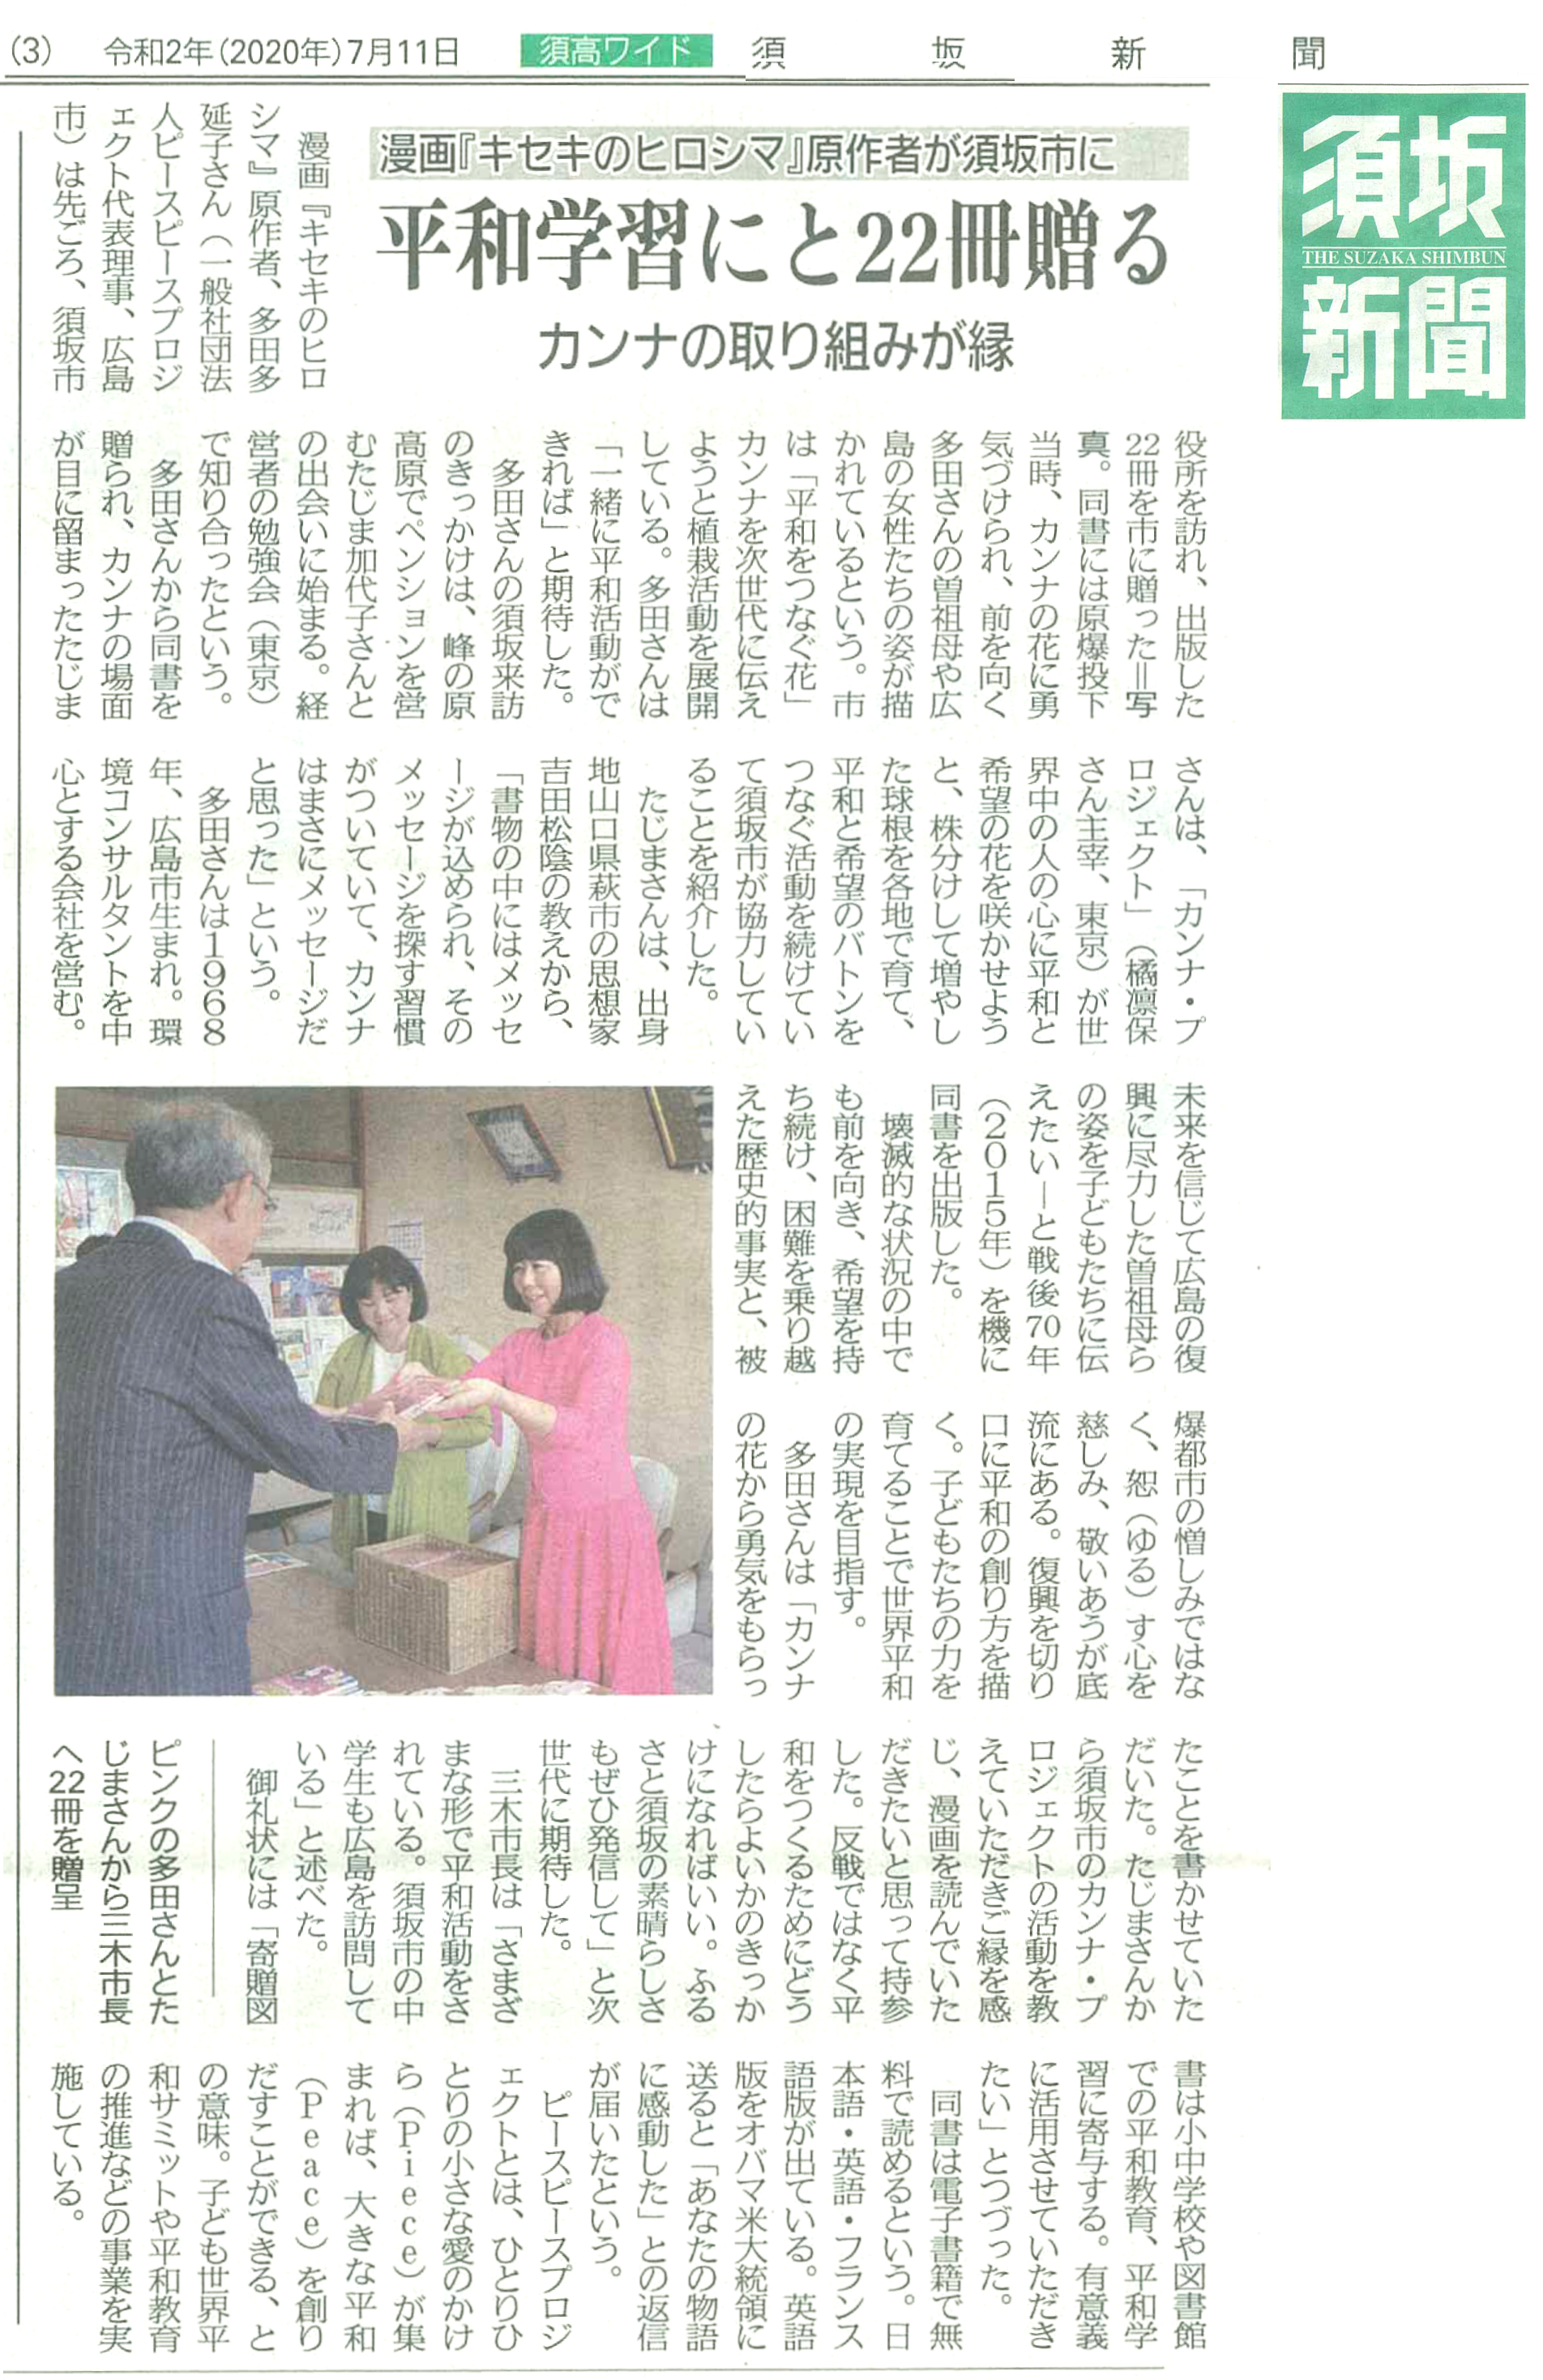 須坂市の学校へのキセキのヒロシマ寄贈について新聞掲載いただきました 一般社団法人ピースピースプロジェクト